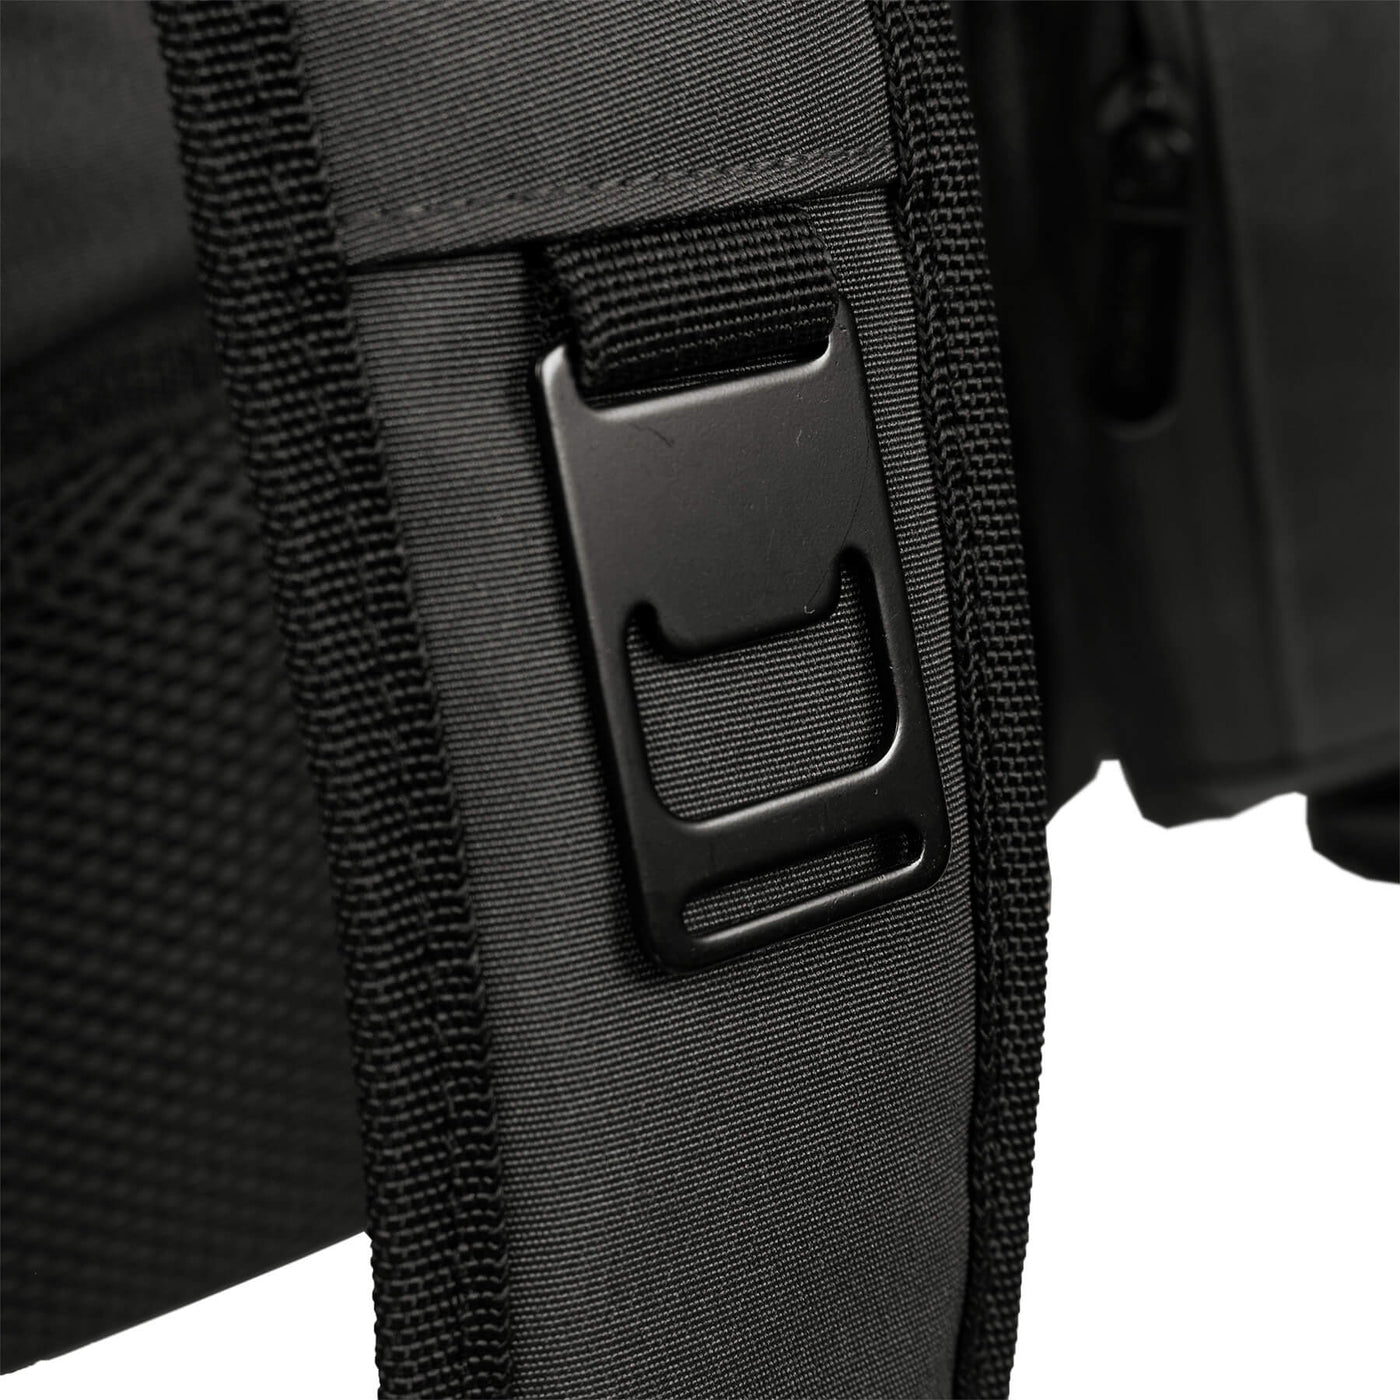 Grey/Black Backpack Cooler #color_grey